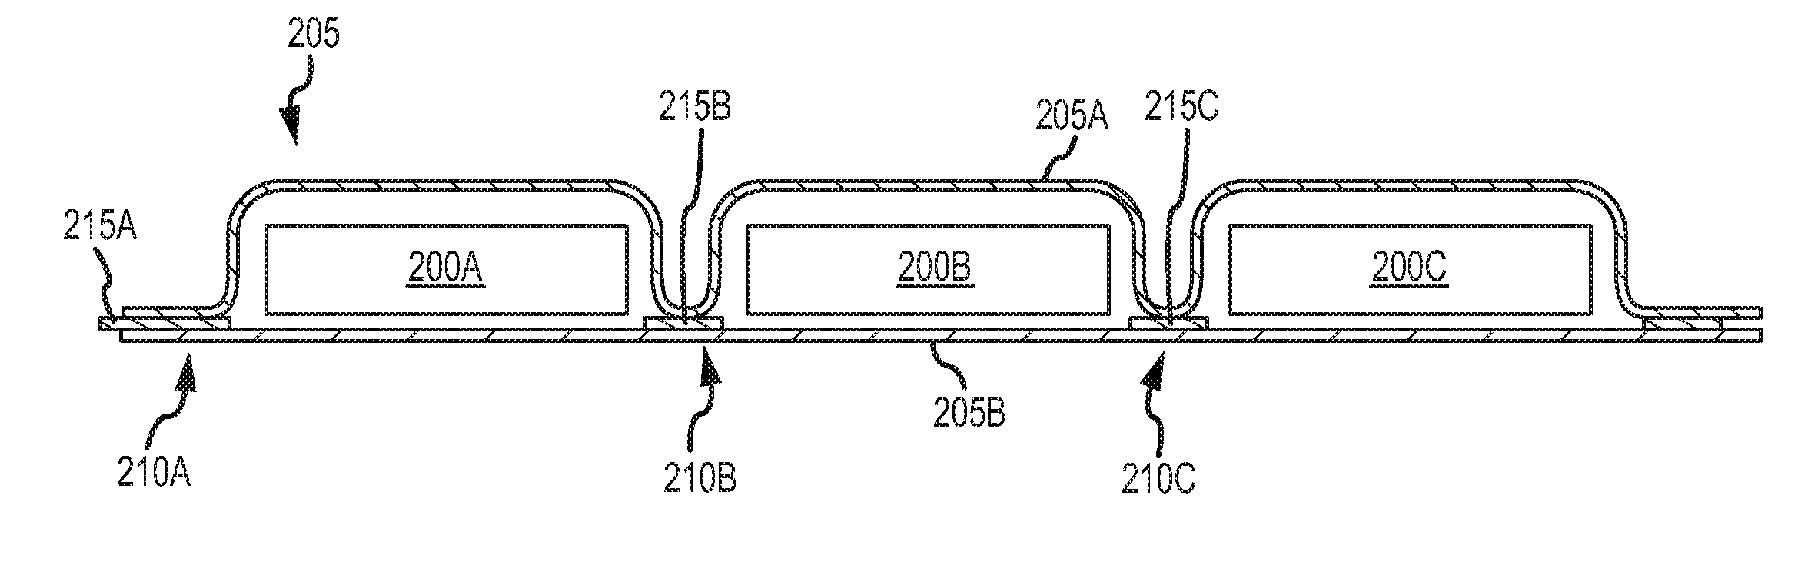 Patente de Apple (batería flexible dibujo 005)